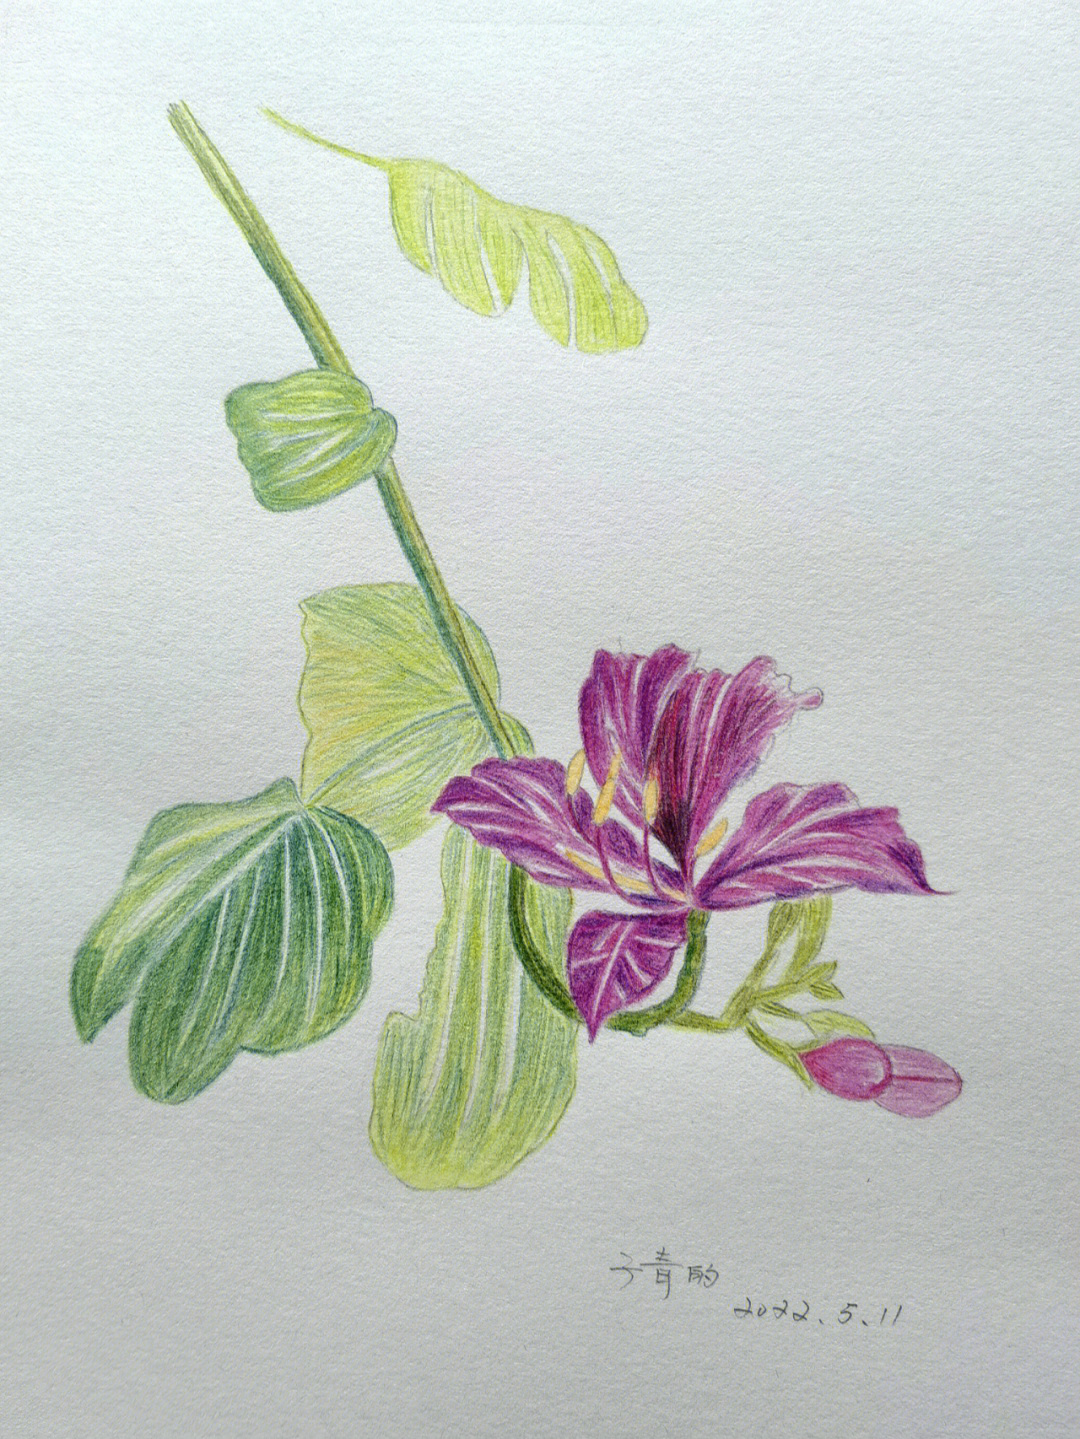 紫荆花怎么画彩铅图片